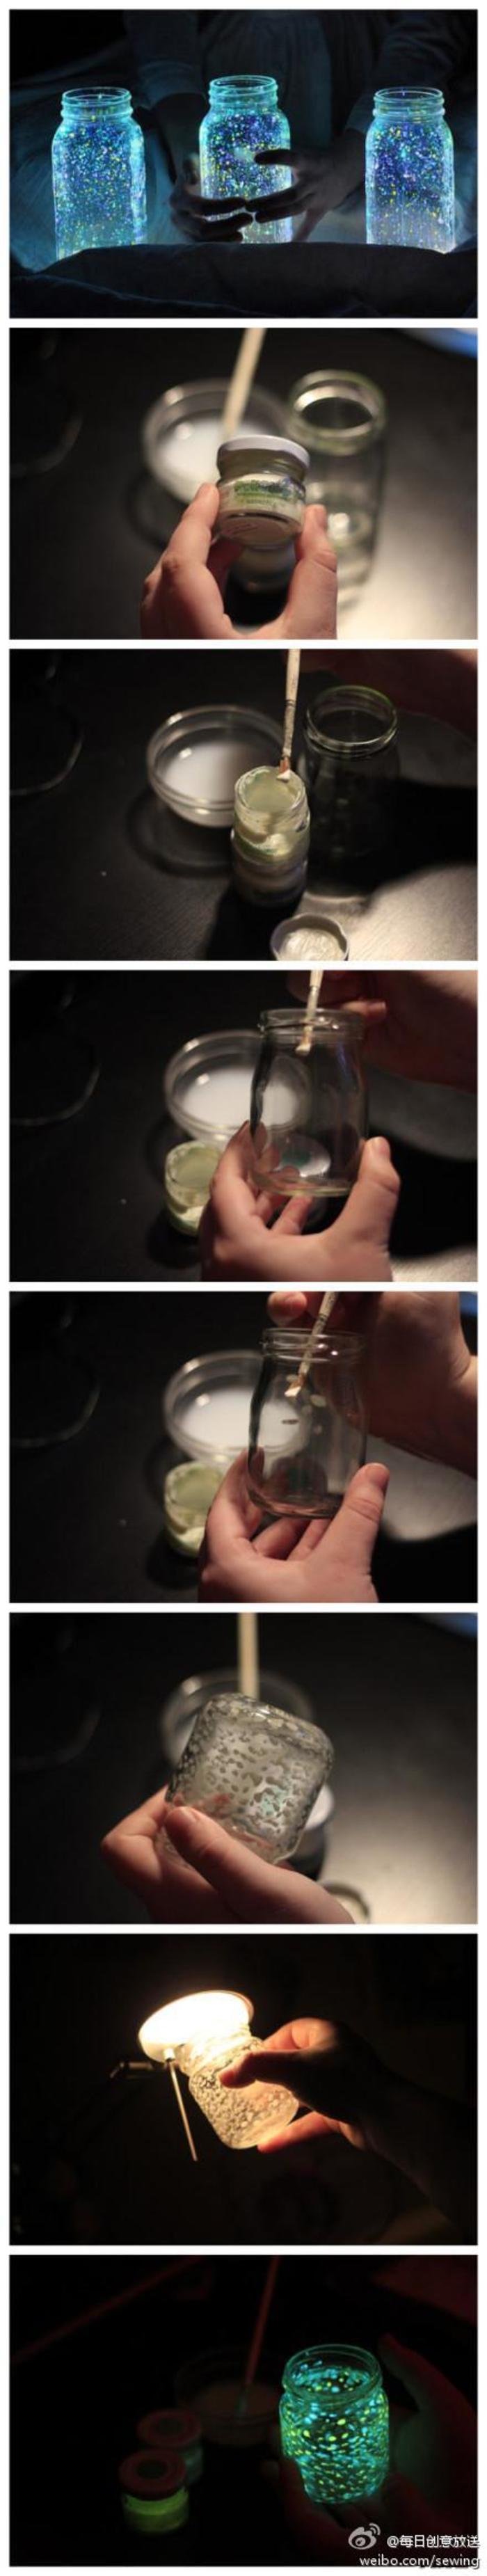 DIY星空玻璃瓶，将你的瓶子洗干净，用刷子蘸取一些发光颜料，涂抹在杯子内侧，点上越多的点点，就可以“收集”到越多的星星了~~
